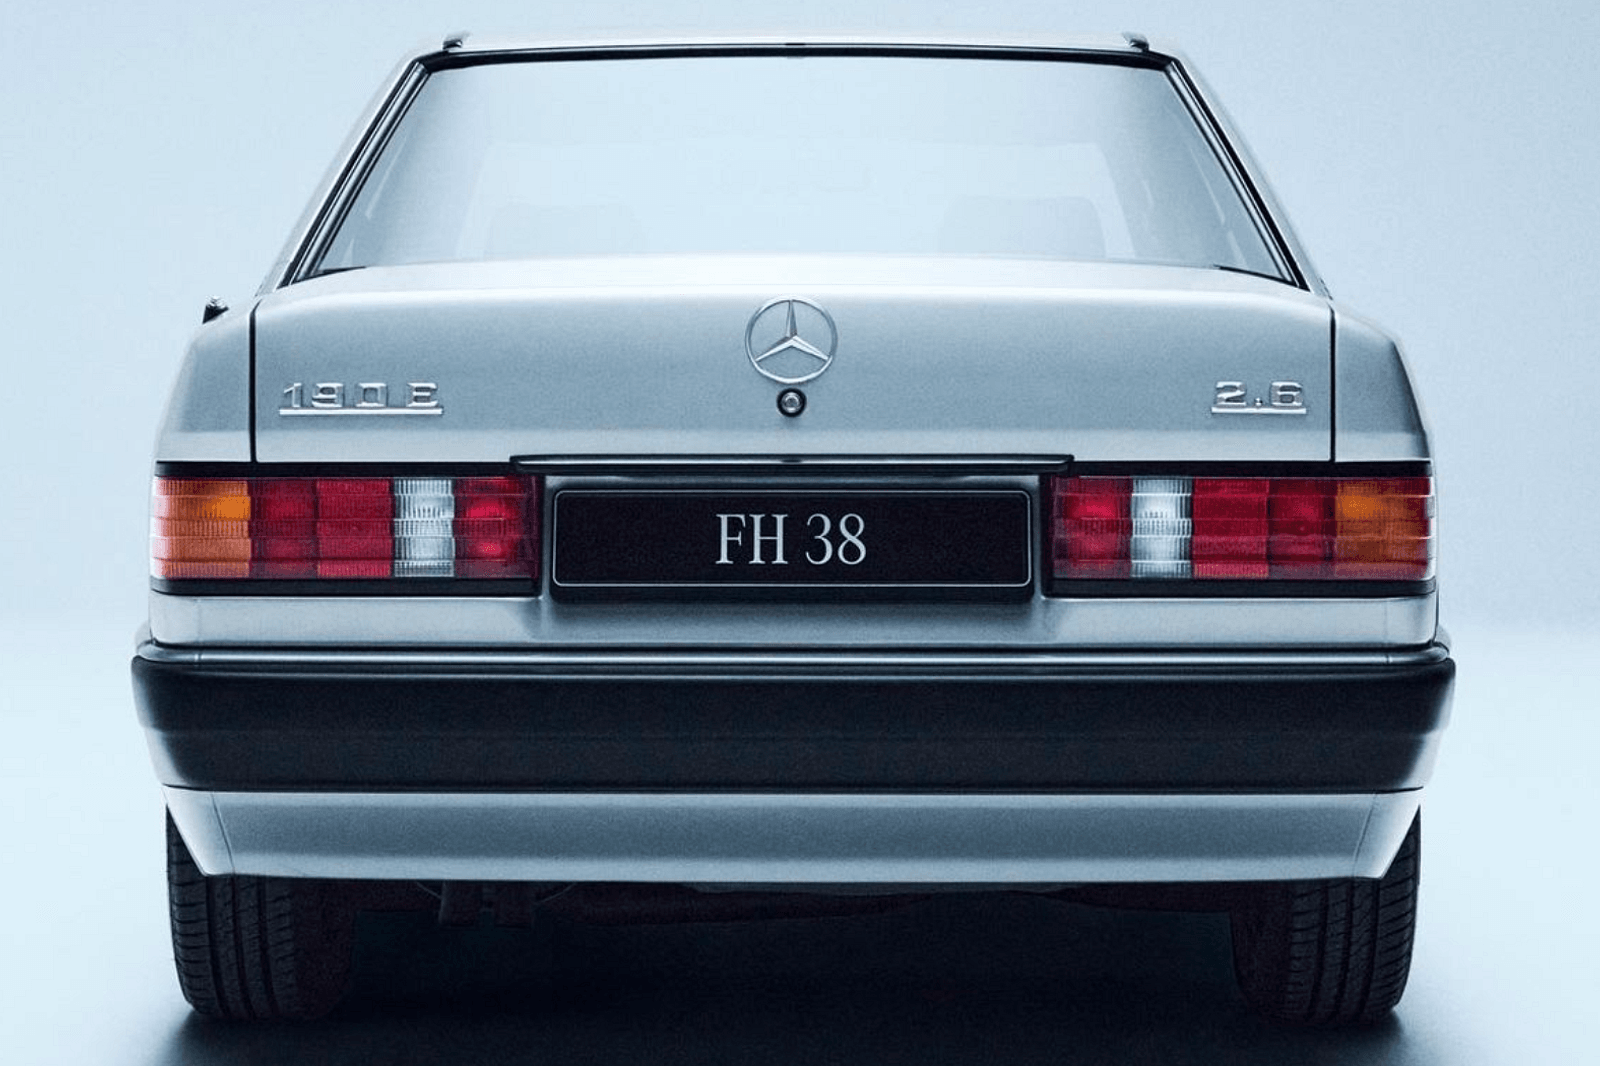 Mercedes-Benz экспериментировал с заводской табличкой C 111 даже спустя пять десятилетий после его появления. После презентации концепта One-Eleven немецкий автопроизводитель представил современный взгляд на экспериментальную концепцию. Арт-кар был с